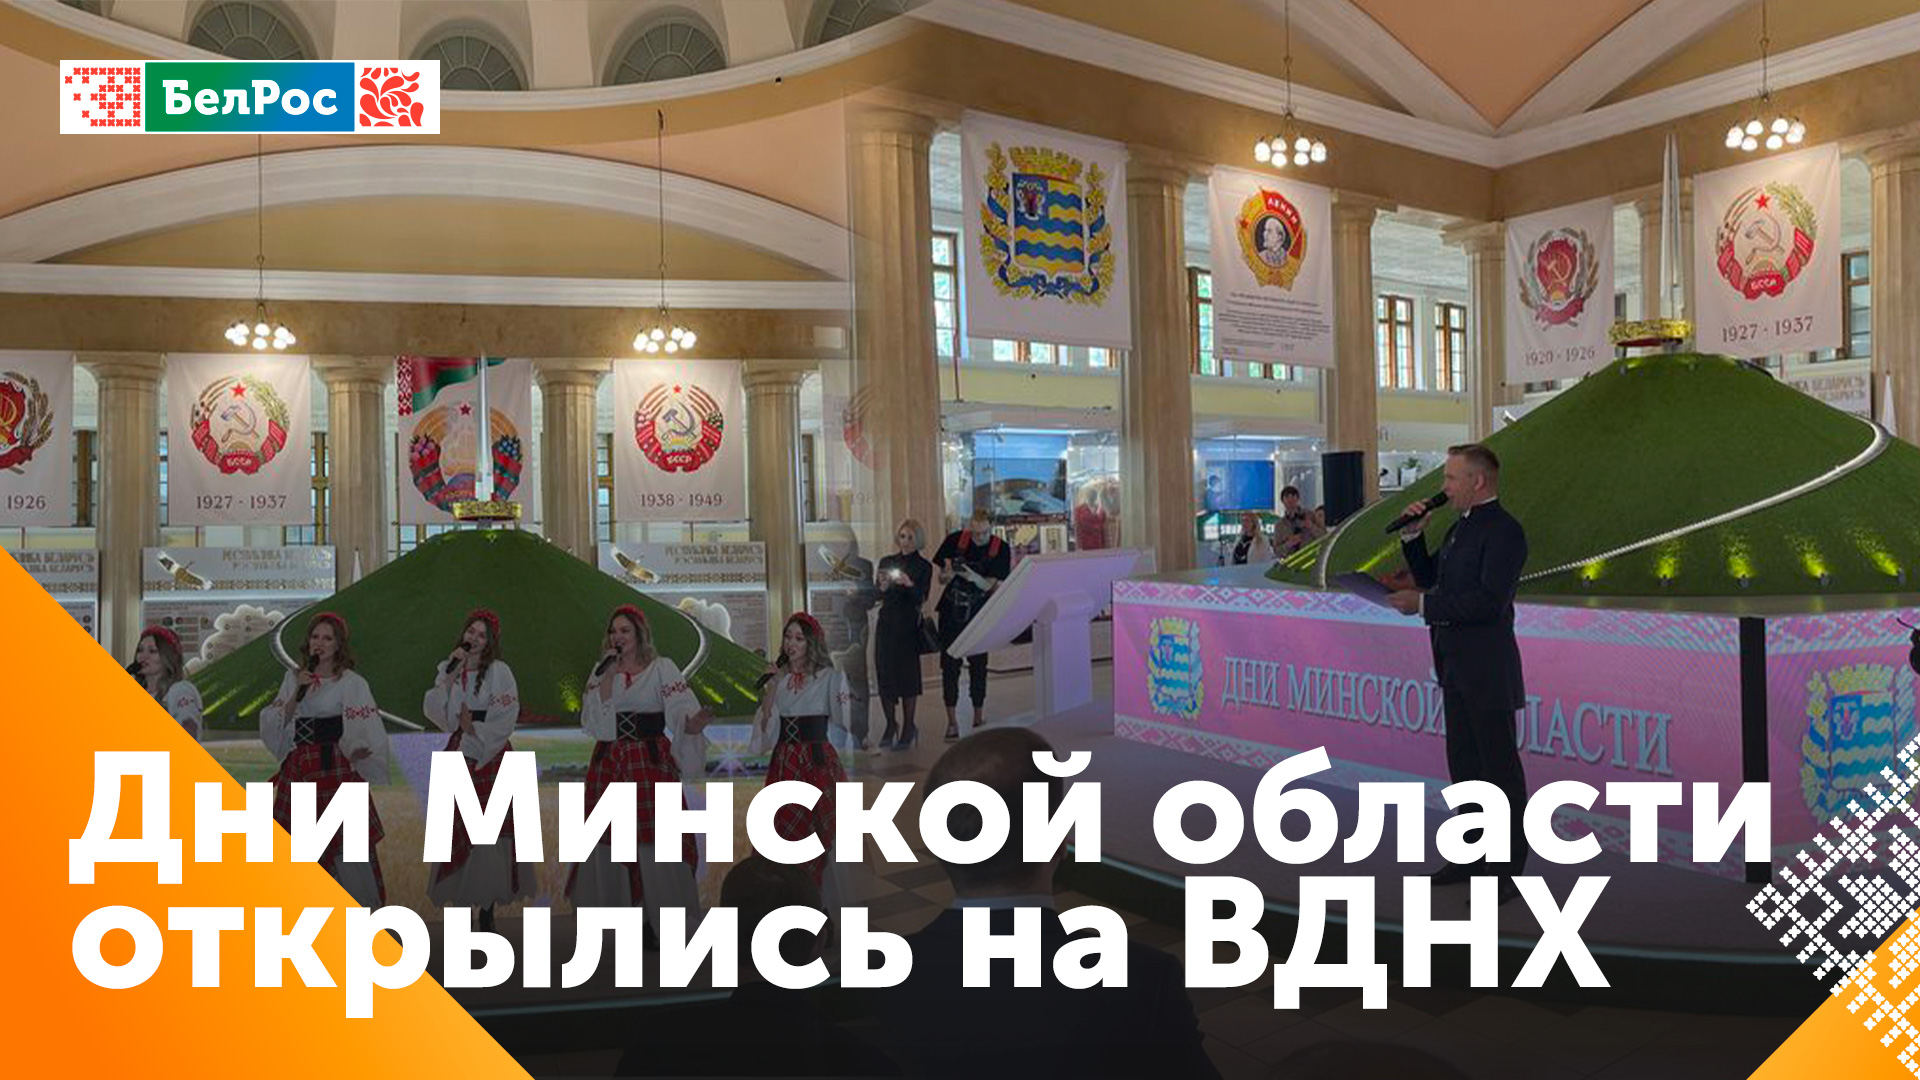 Промышленный, туристический и культурный потенциал Минской области представили в Москве на ВДНХ